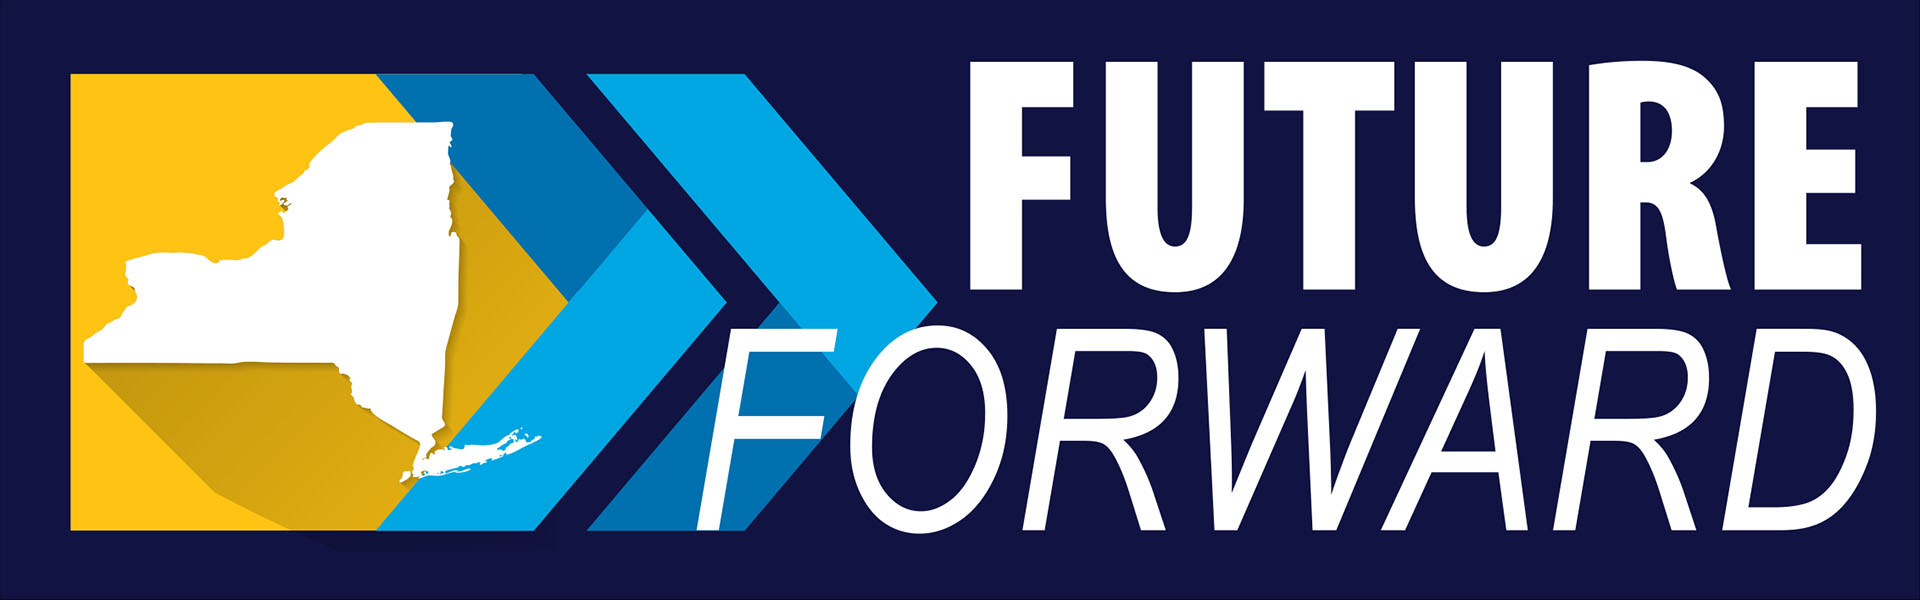 future forward